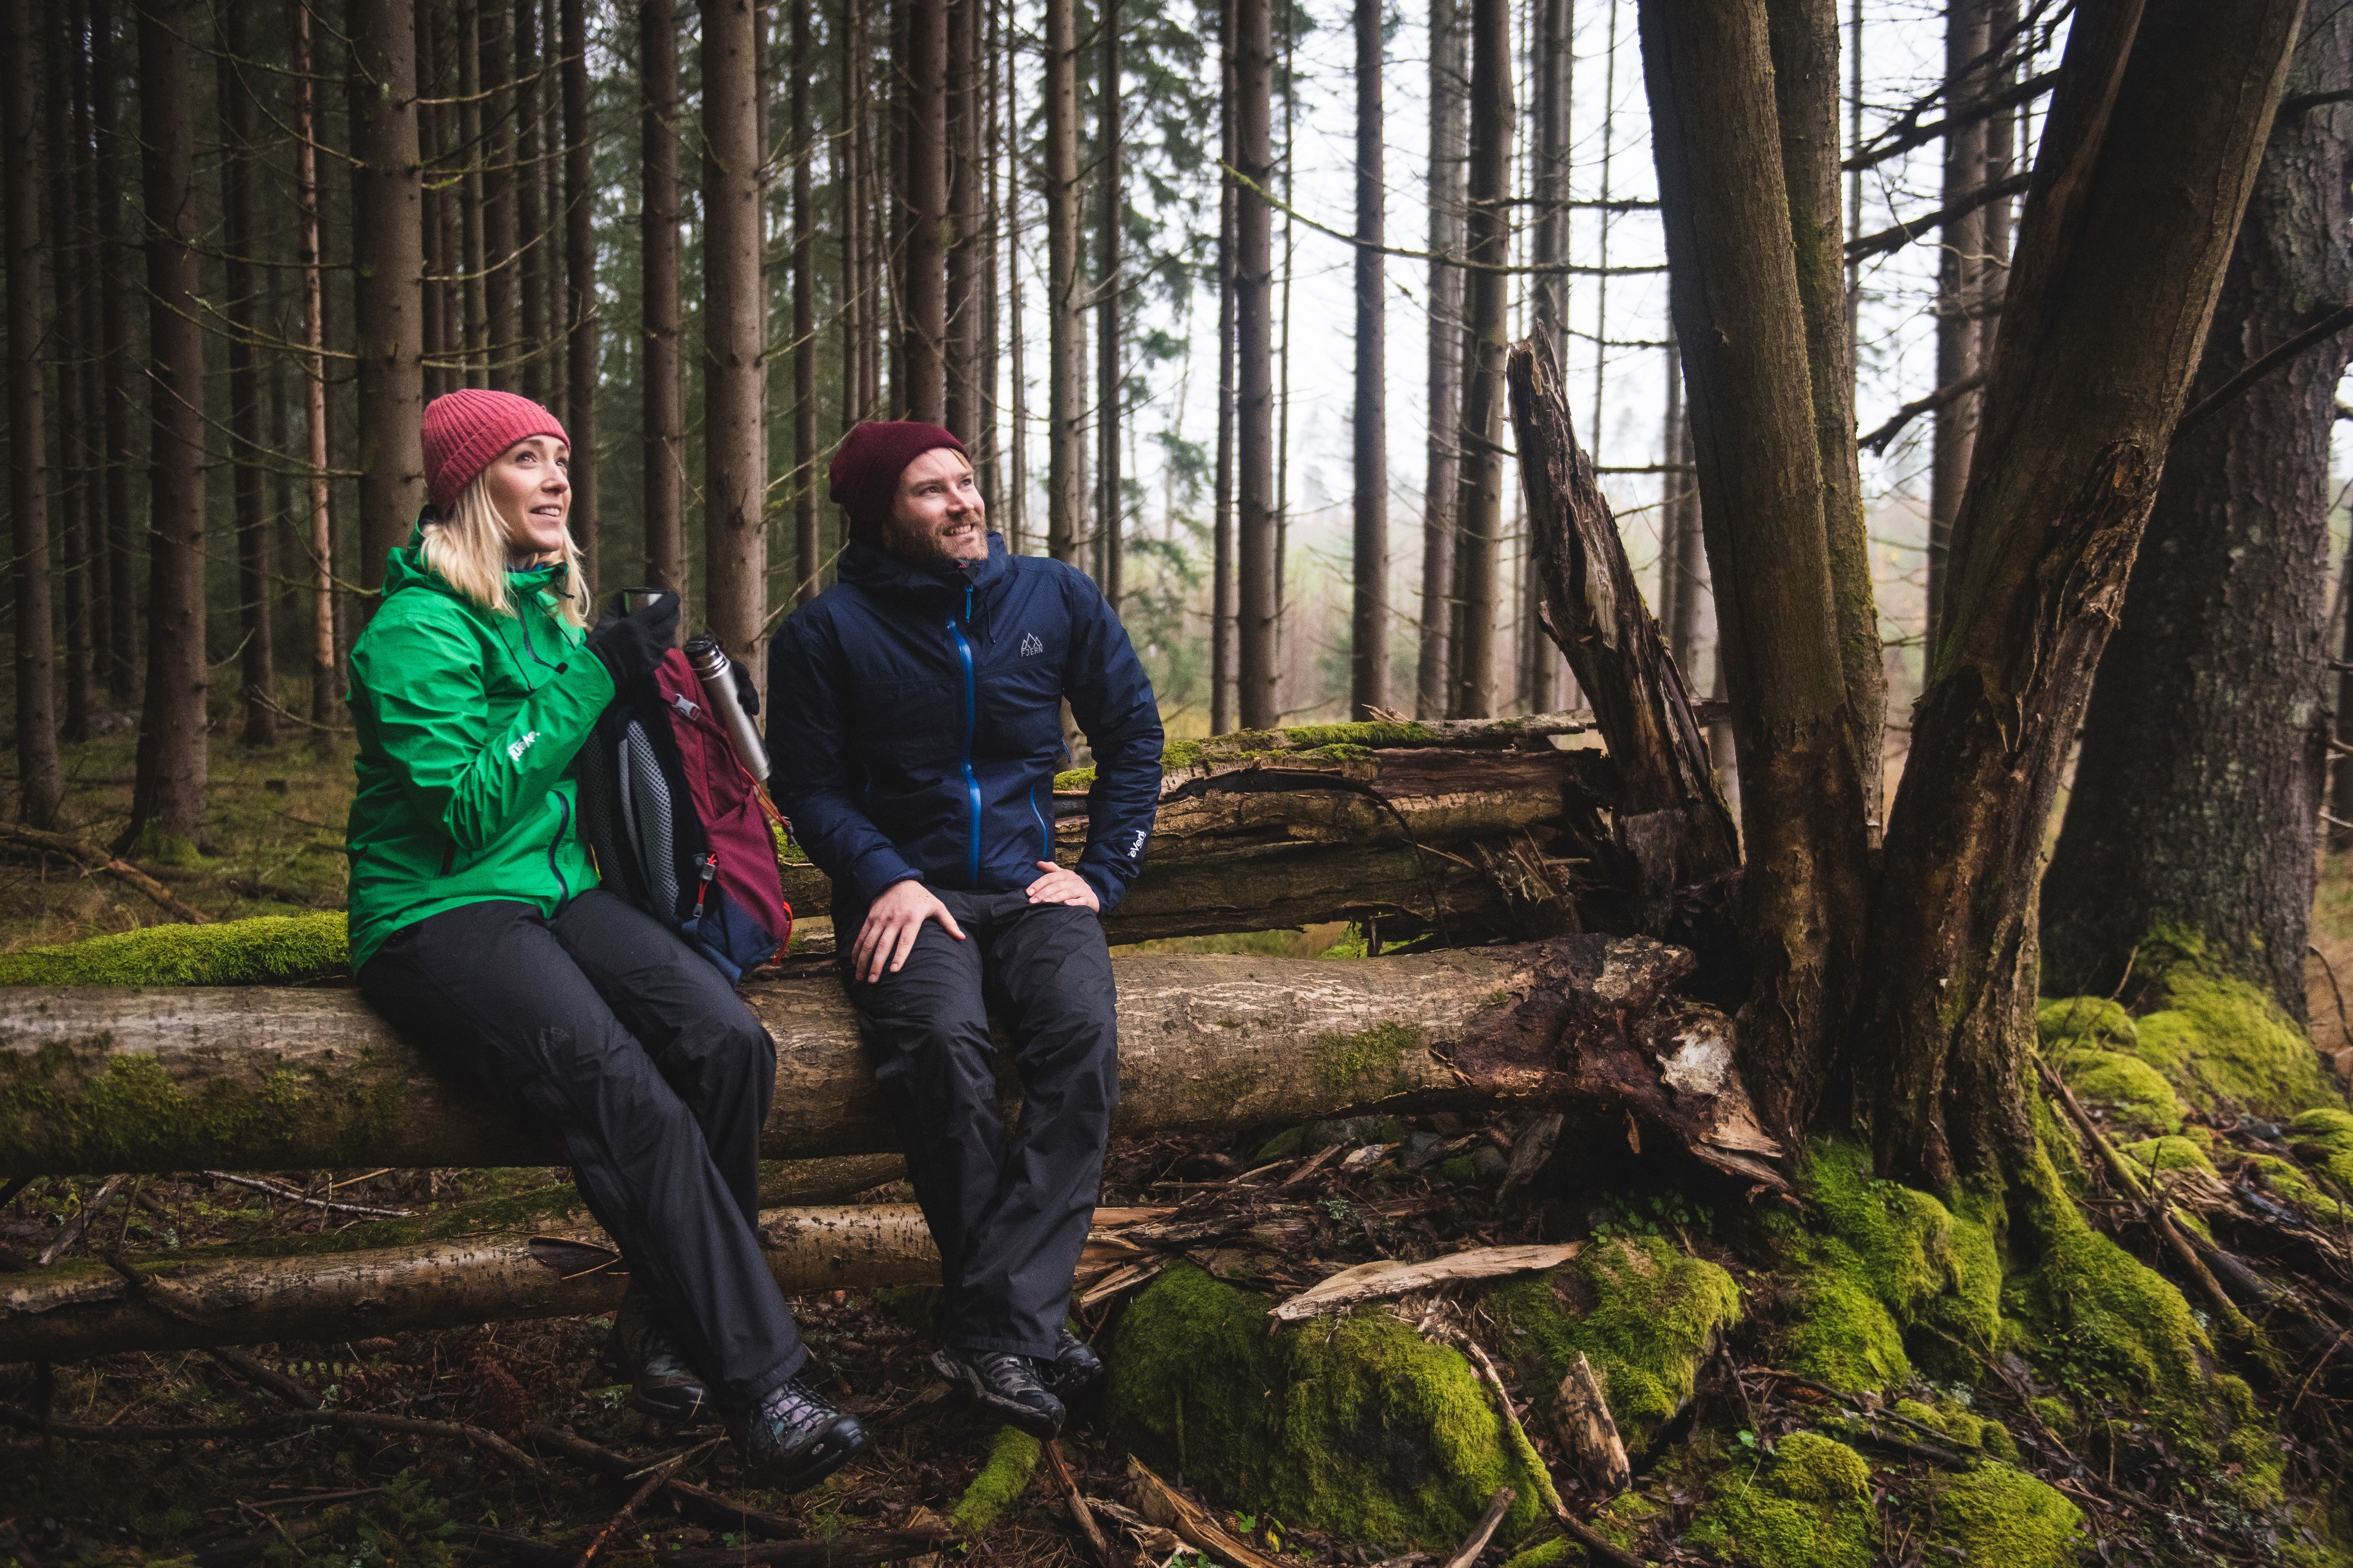 Fjern Vanntett Waterproof Trousers sat on a fallen tree in a mossy forest